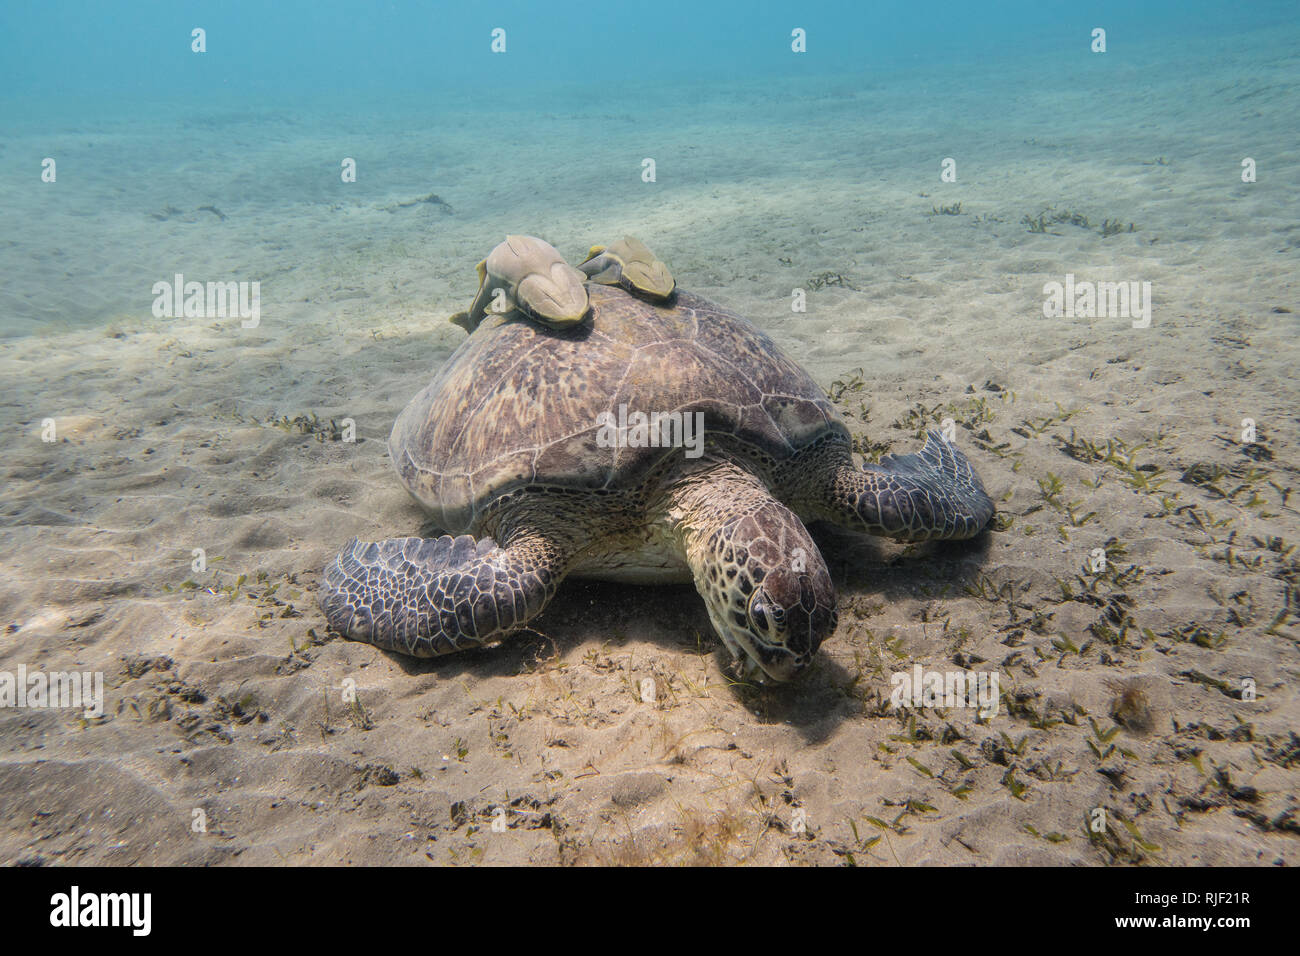 Sea Turtle mit zwei schiffshalter Fische auf Ihrer Shell Beweidung Seegras auf dem sandigen Meeresgrund des Roten Meeres in Ägypten Stockfoto